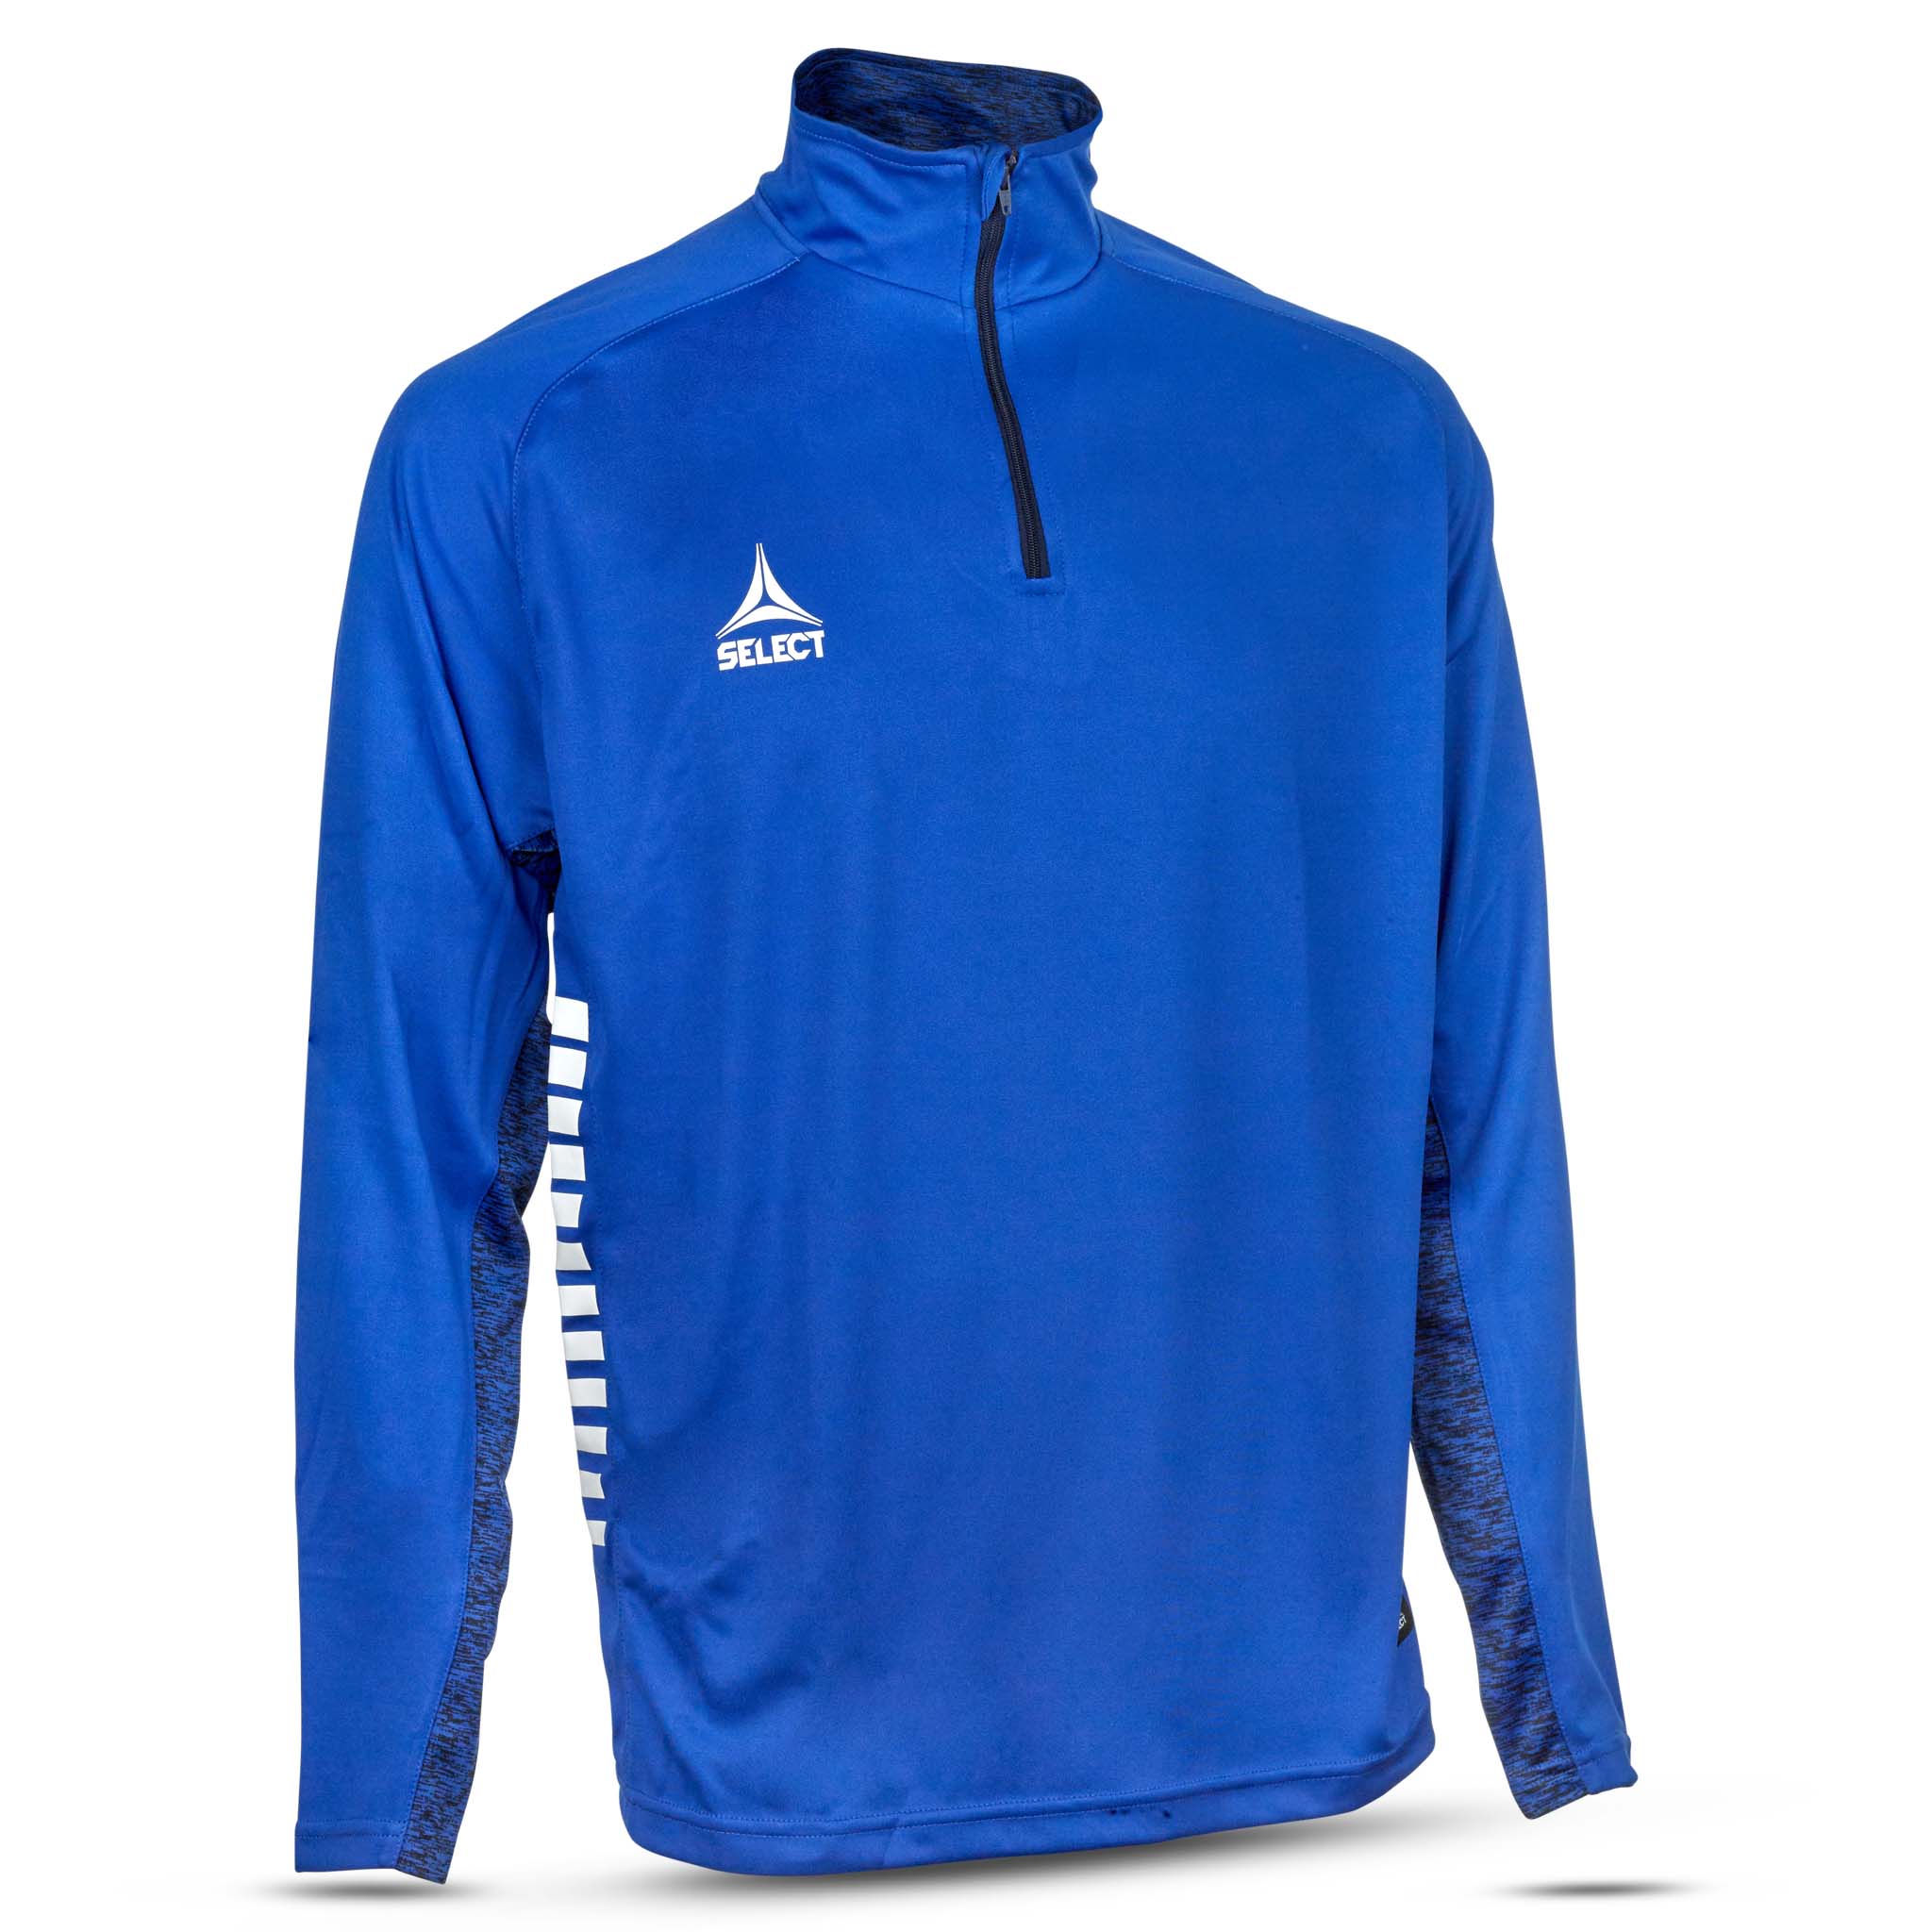 Spain Träning sweatshirt 1/2 zip - Barn #färg_blå